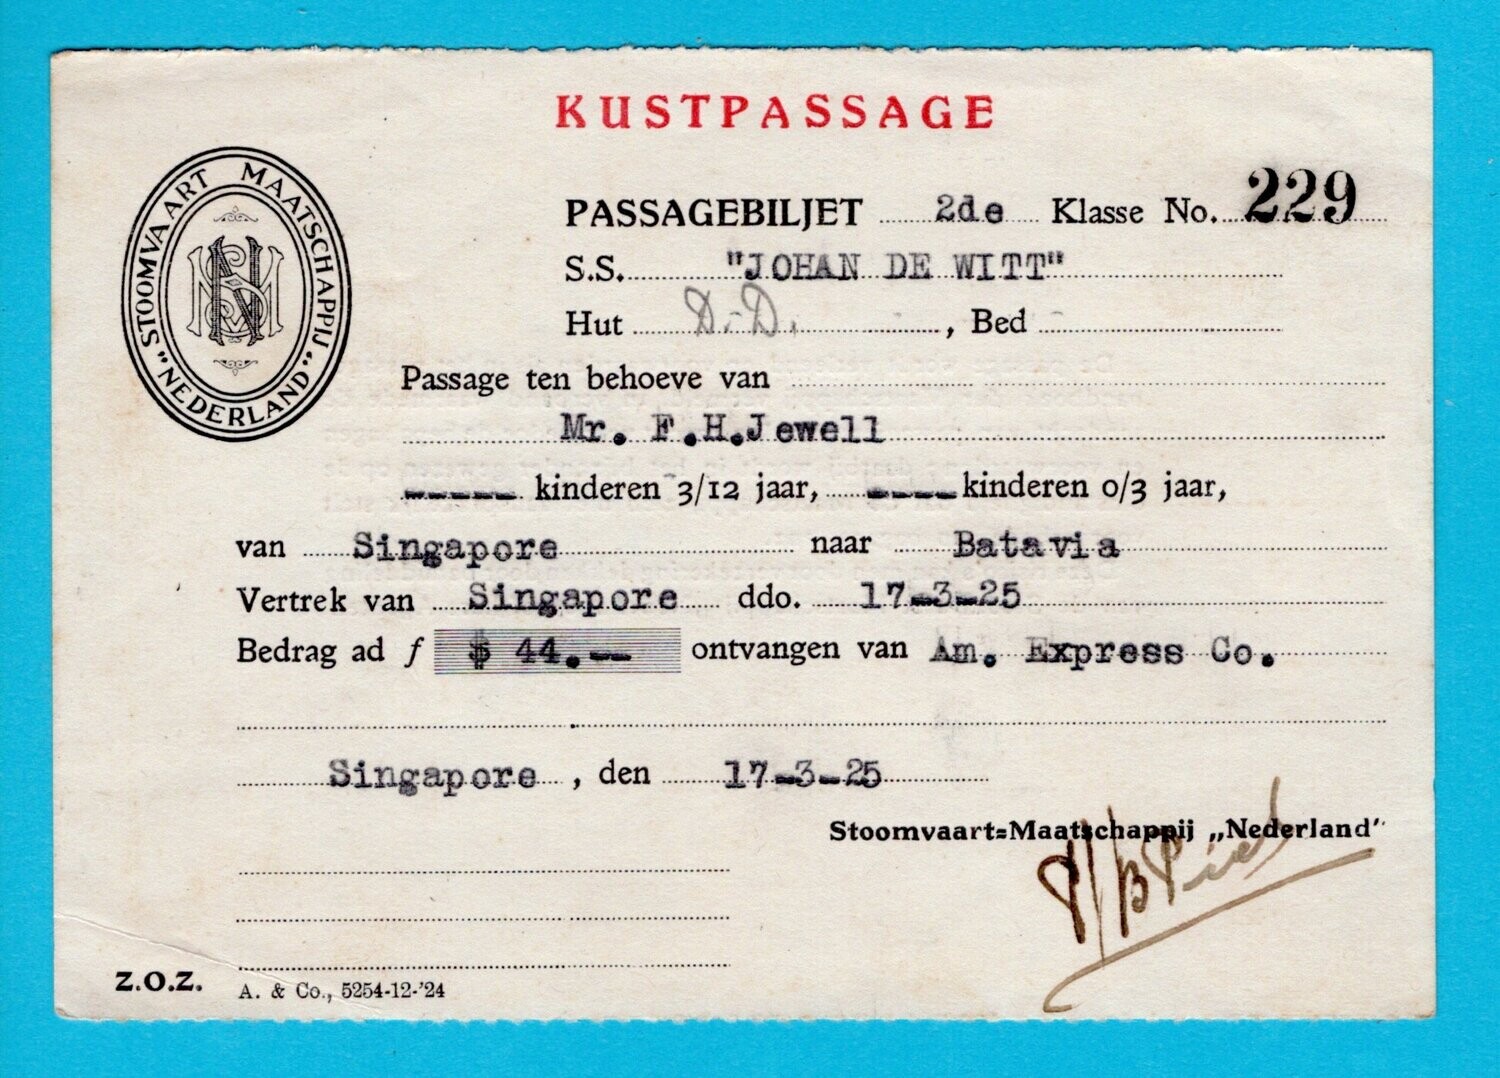 NEDERLAND passagebiljet 1925 S.S. Johan de Witt